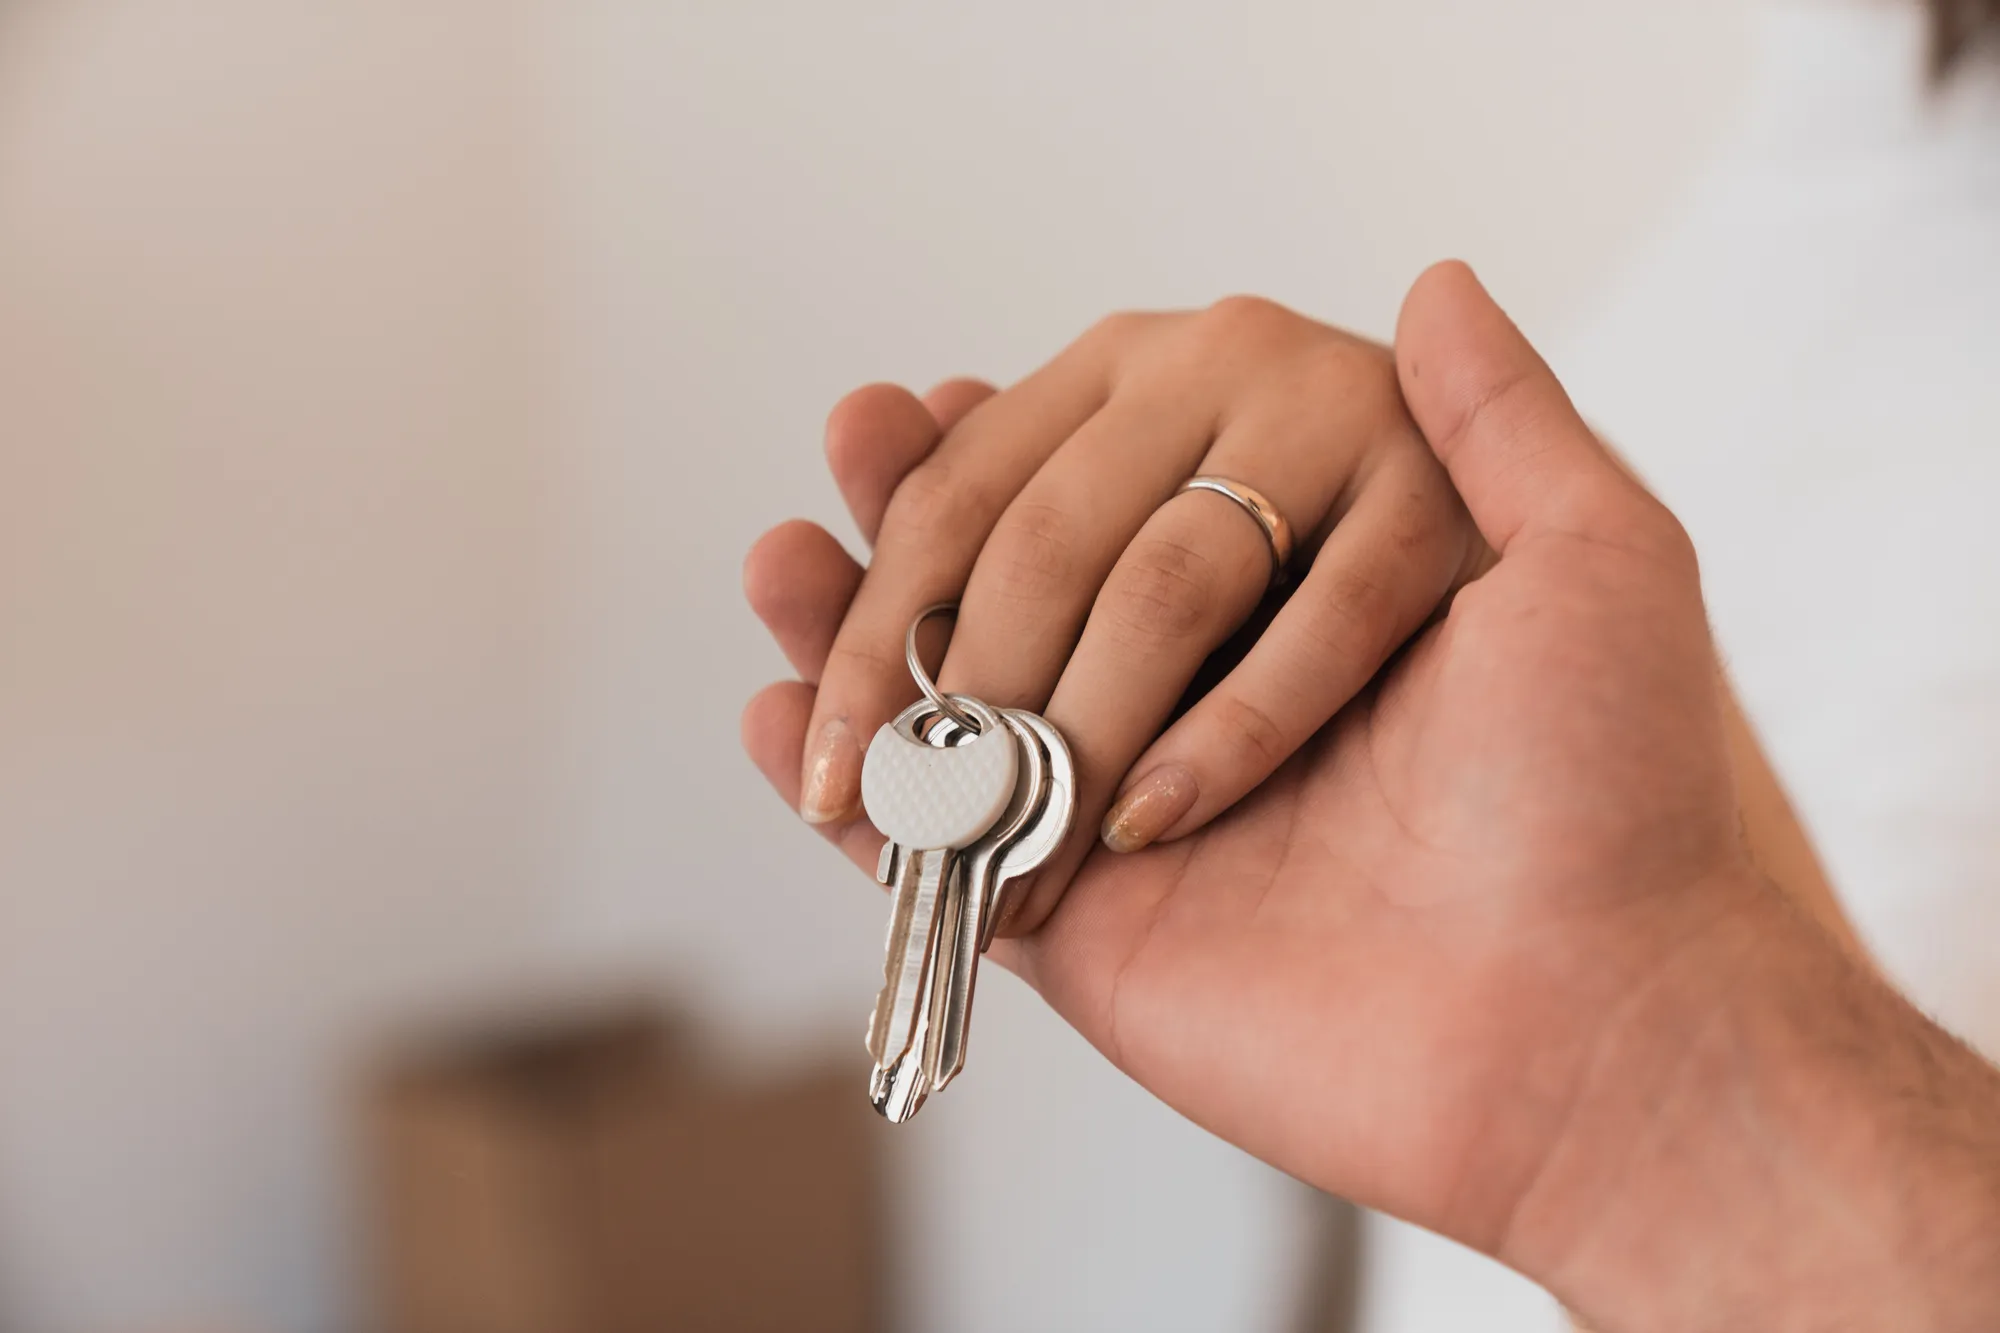 hands holding house keys